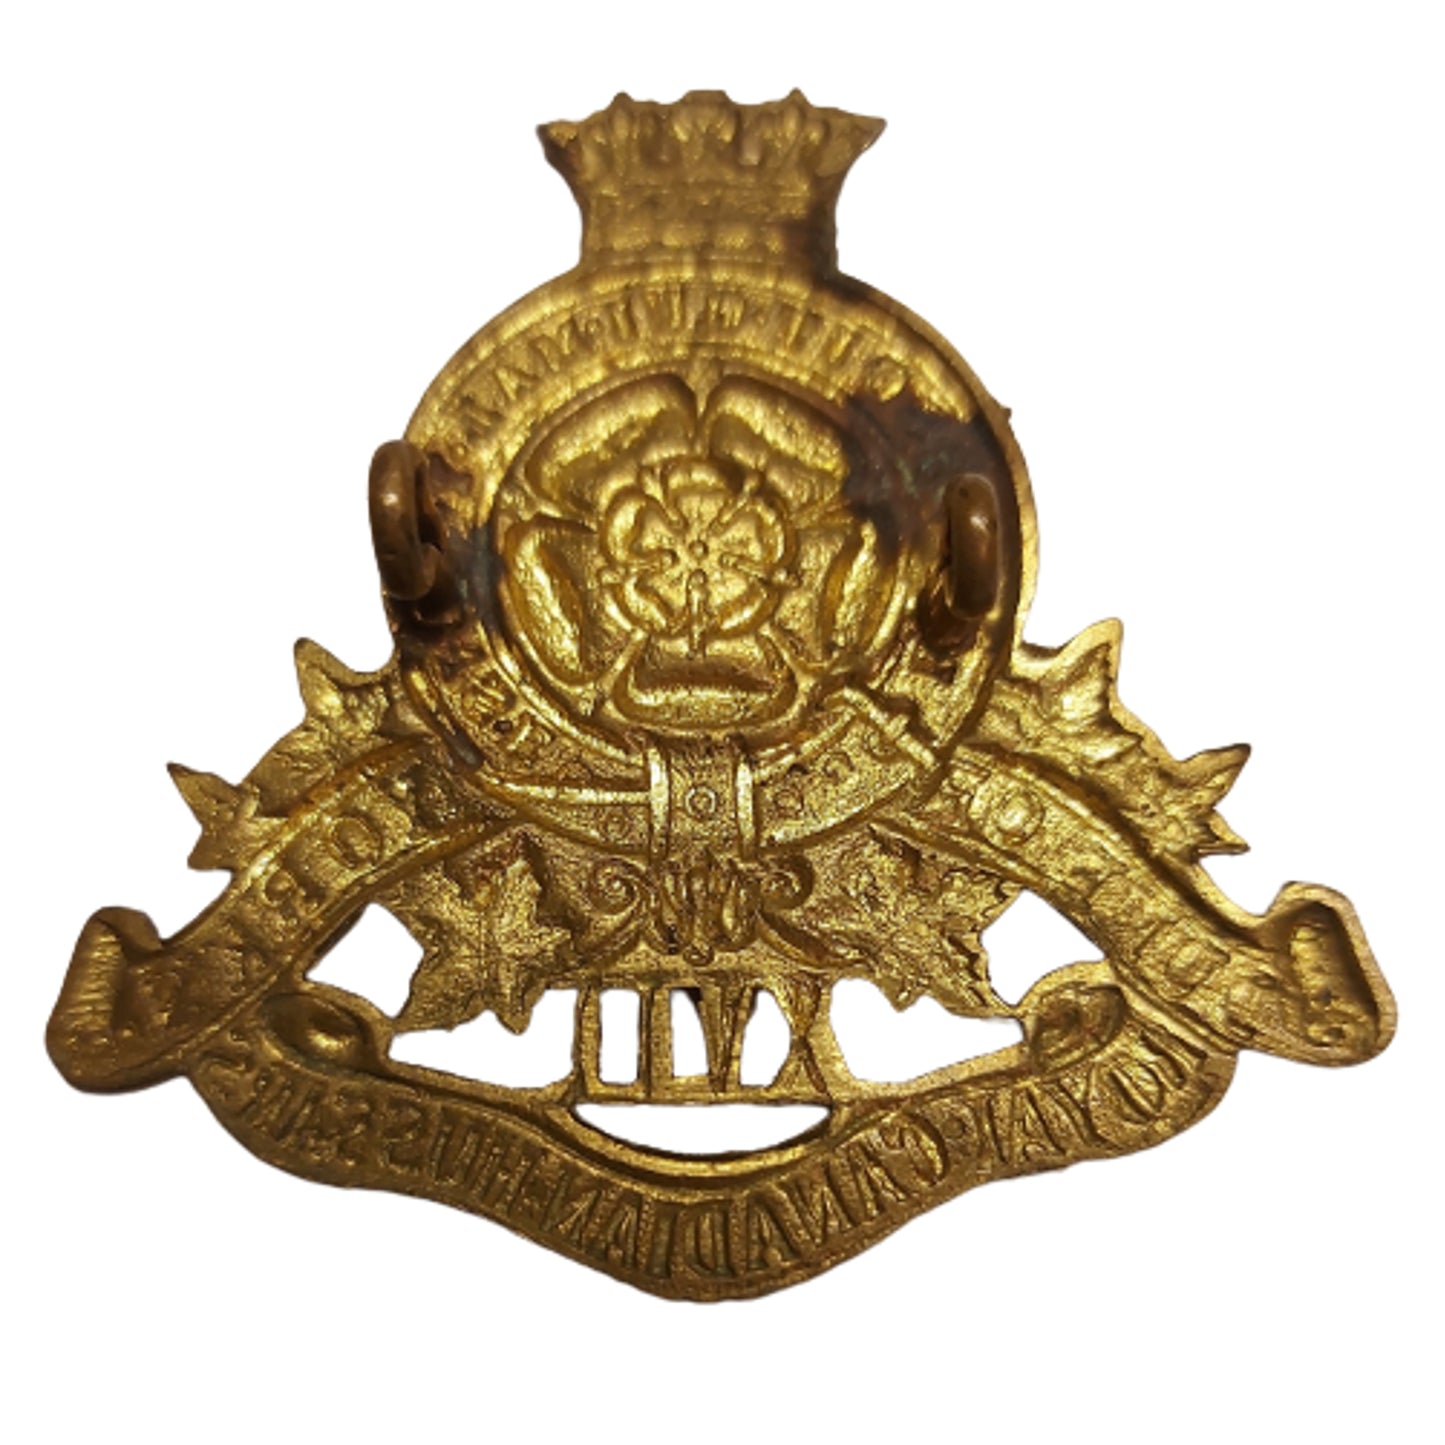 WW2 17th Duke of York's Royal Canadian Hussars Cap Badge